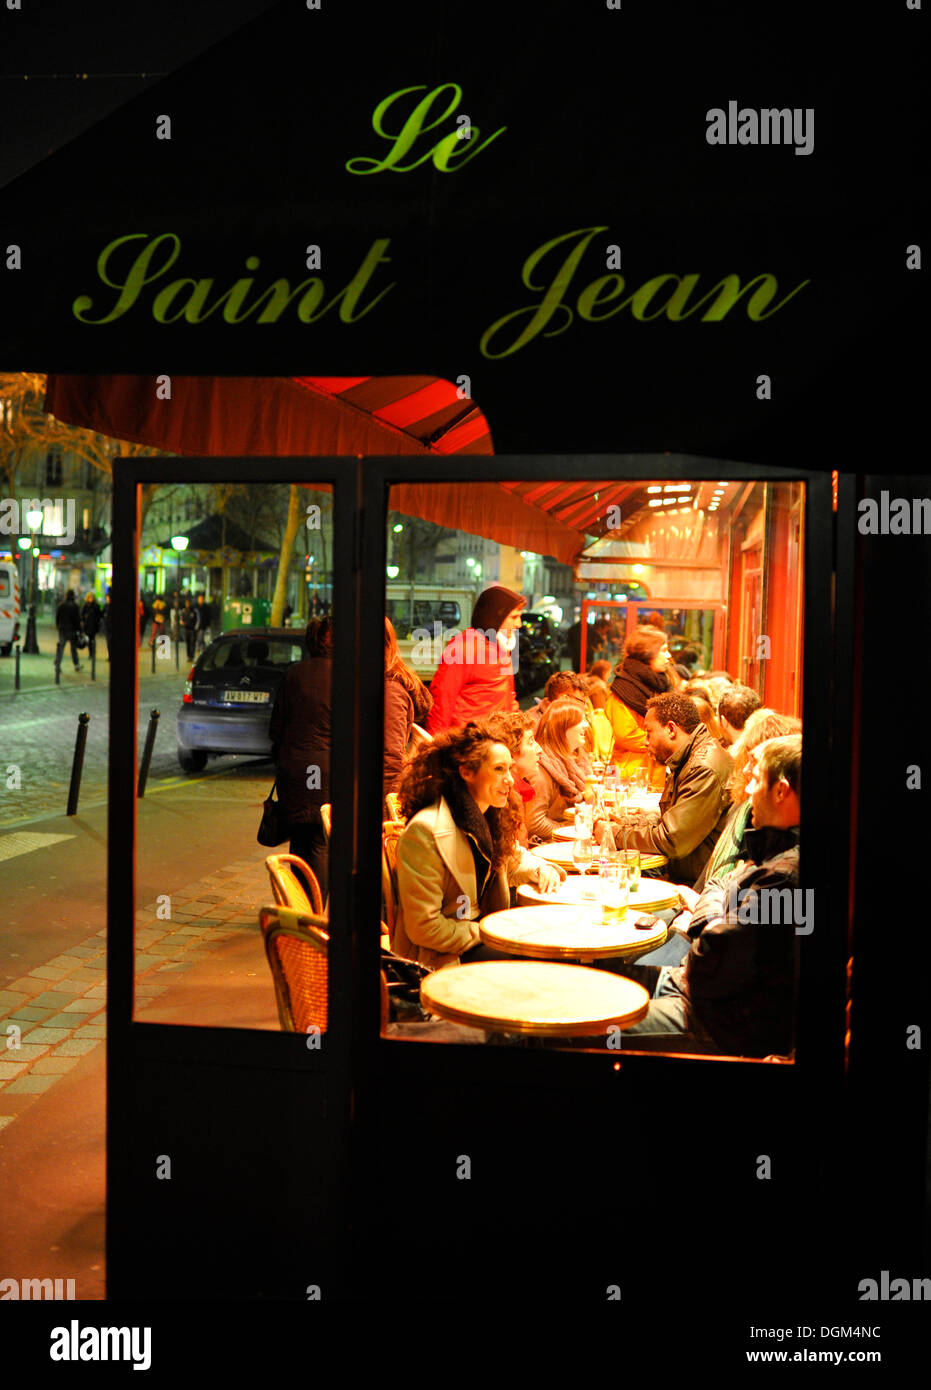 Café Restaurant Le Saint Jean at night, Montmartre, Paris, France, Europe Stock Photo